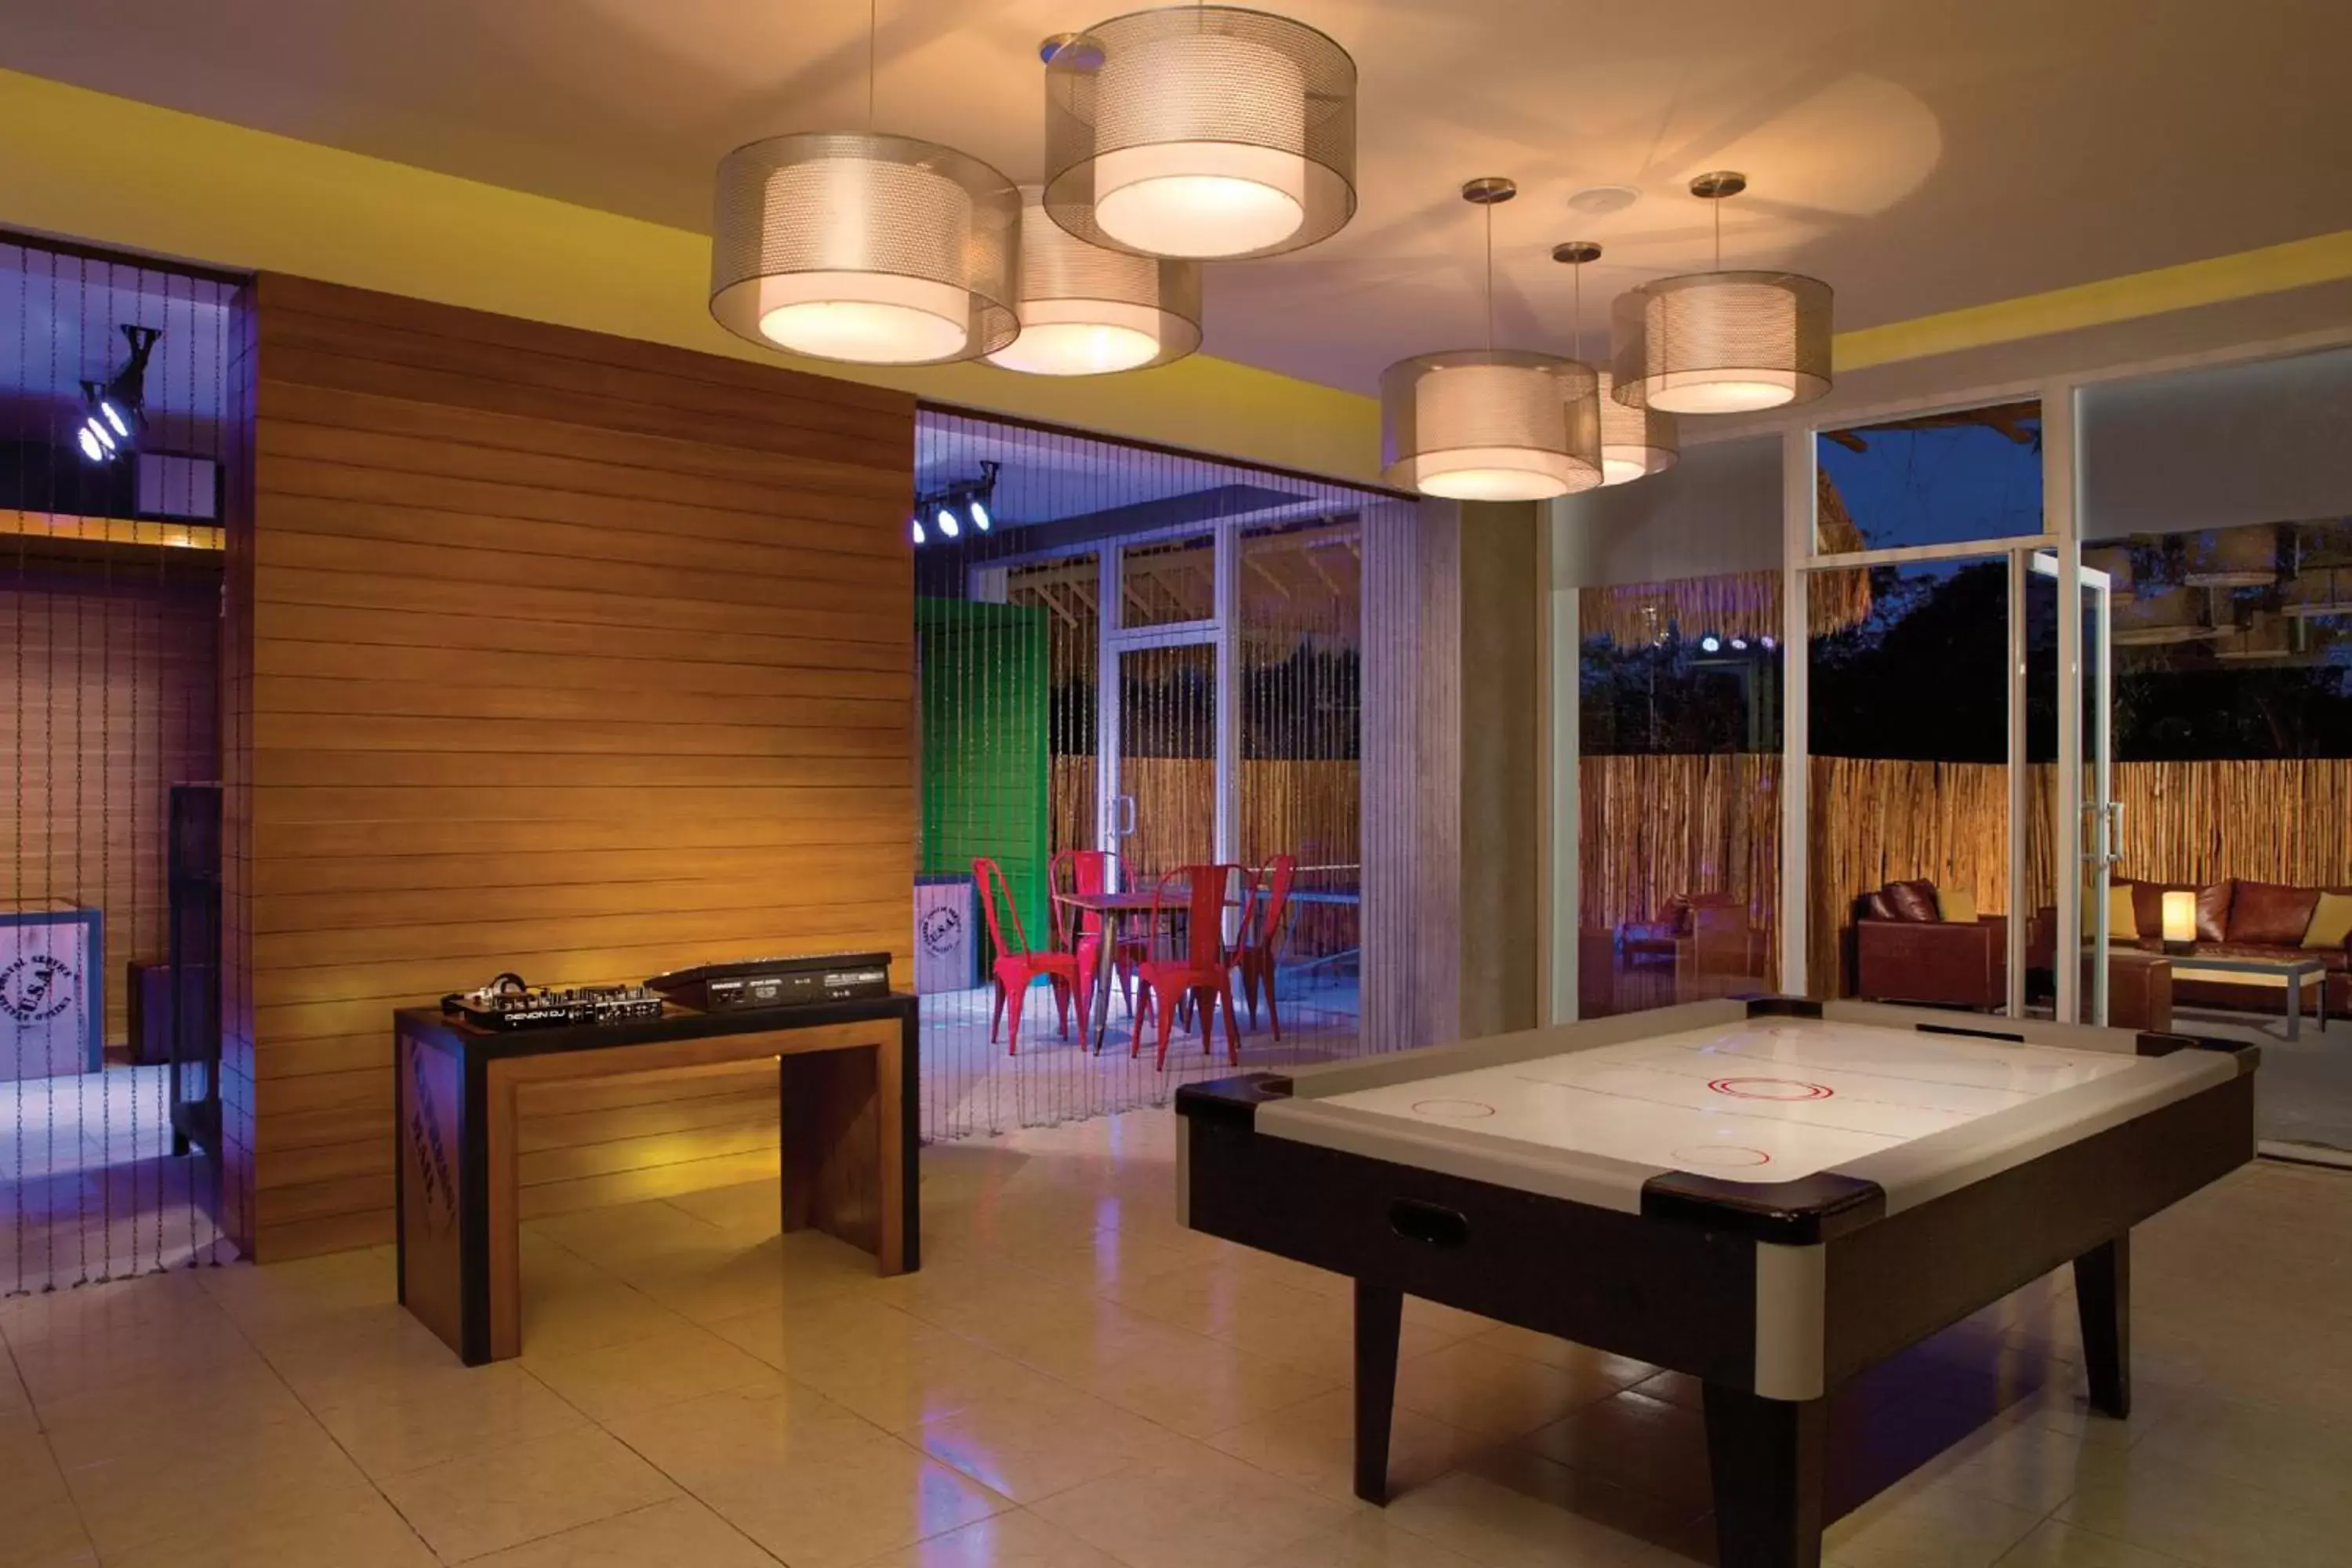 Game Room, Billiards in Dreams Cozumel Cape Resort & Spa